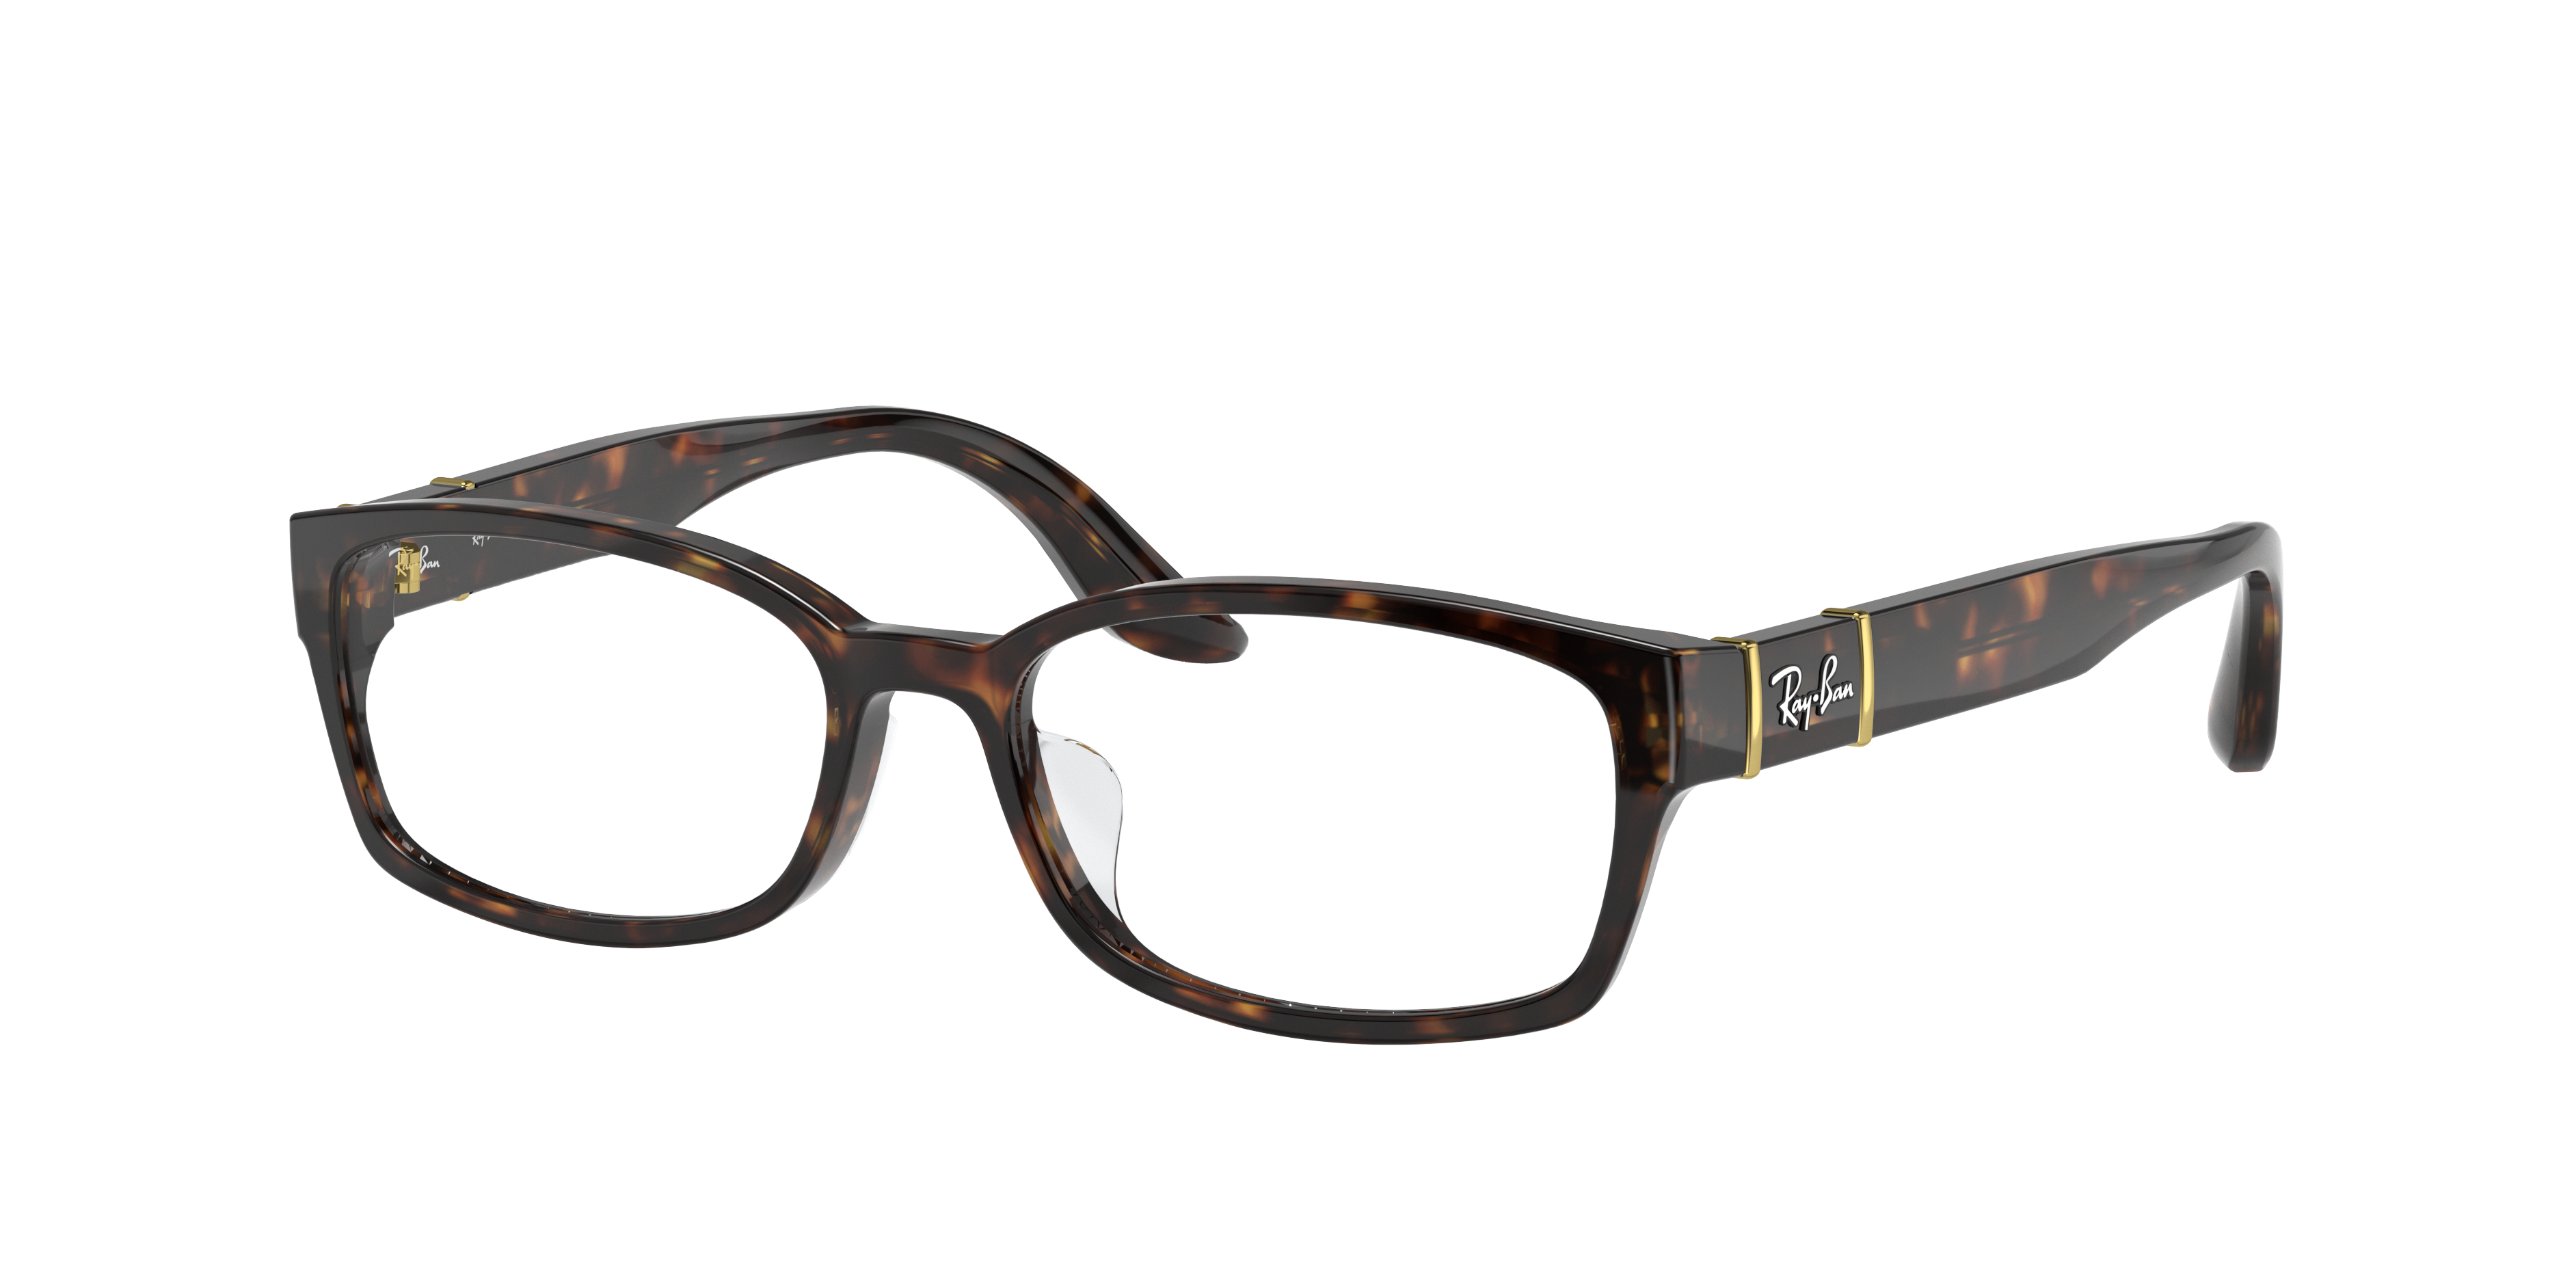 Ray Ban Rb5198 Eyeglasses Tortoise Frame Clear Lenses 53-16